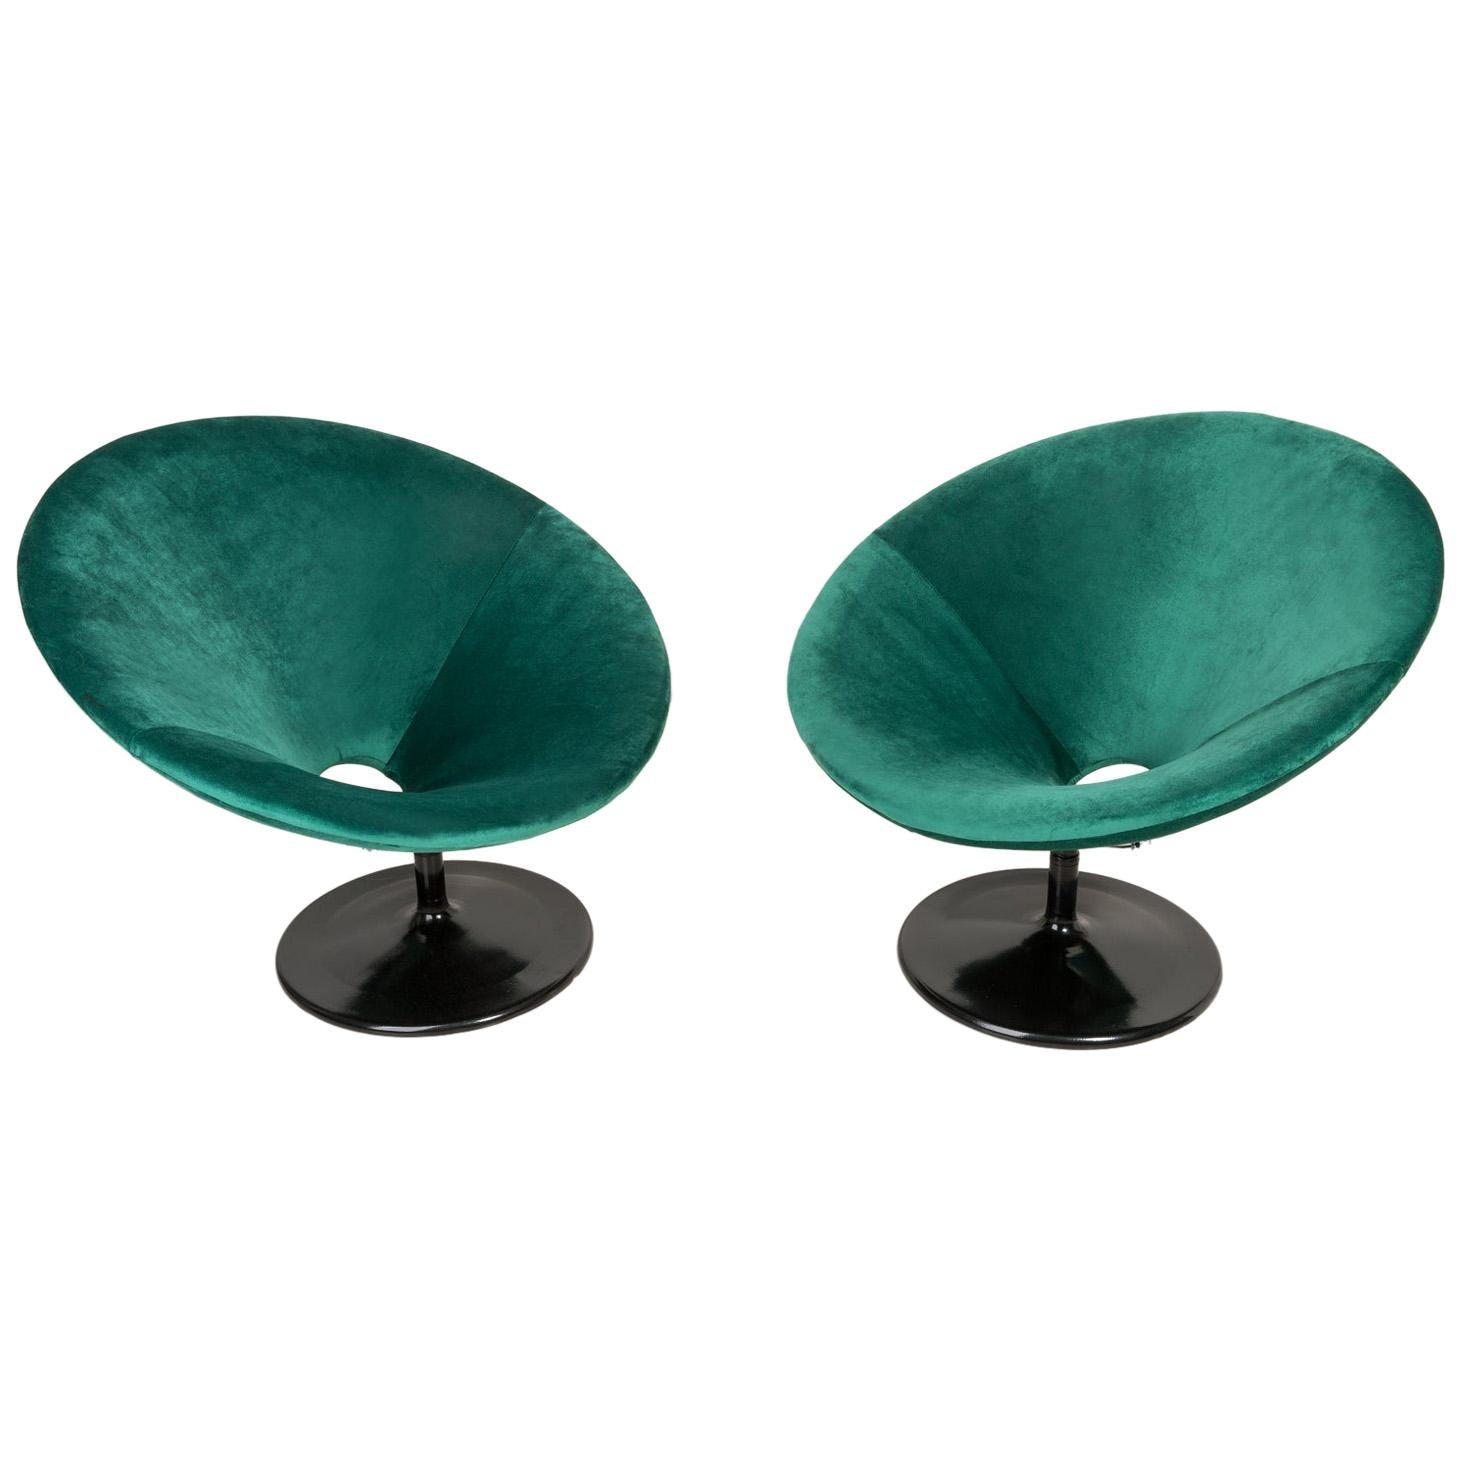 Deux fauteuils pivotants vintage verts UFO du XXe siècle, années 1960